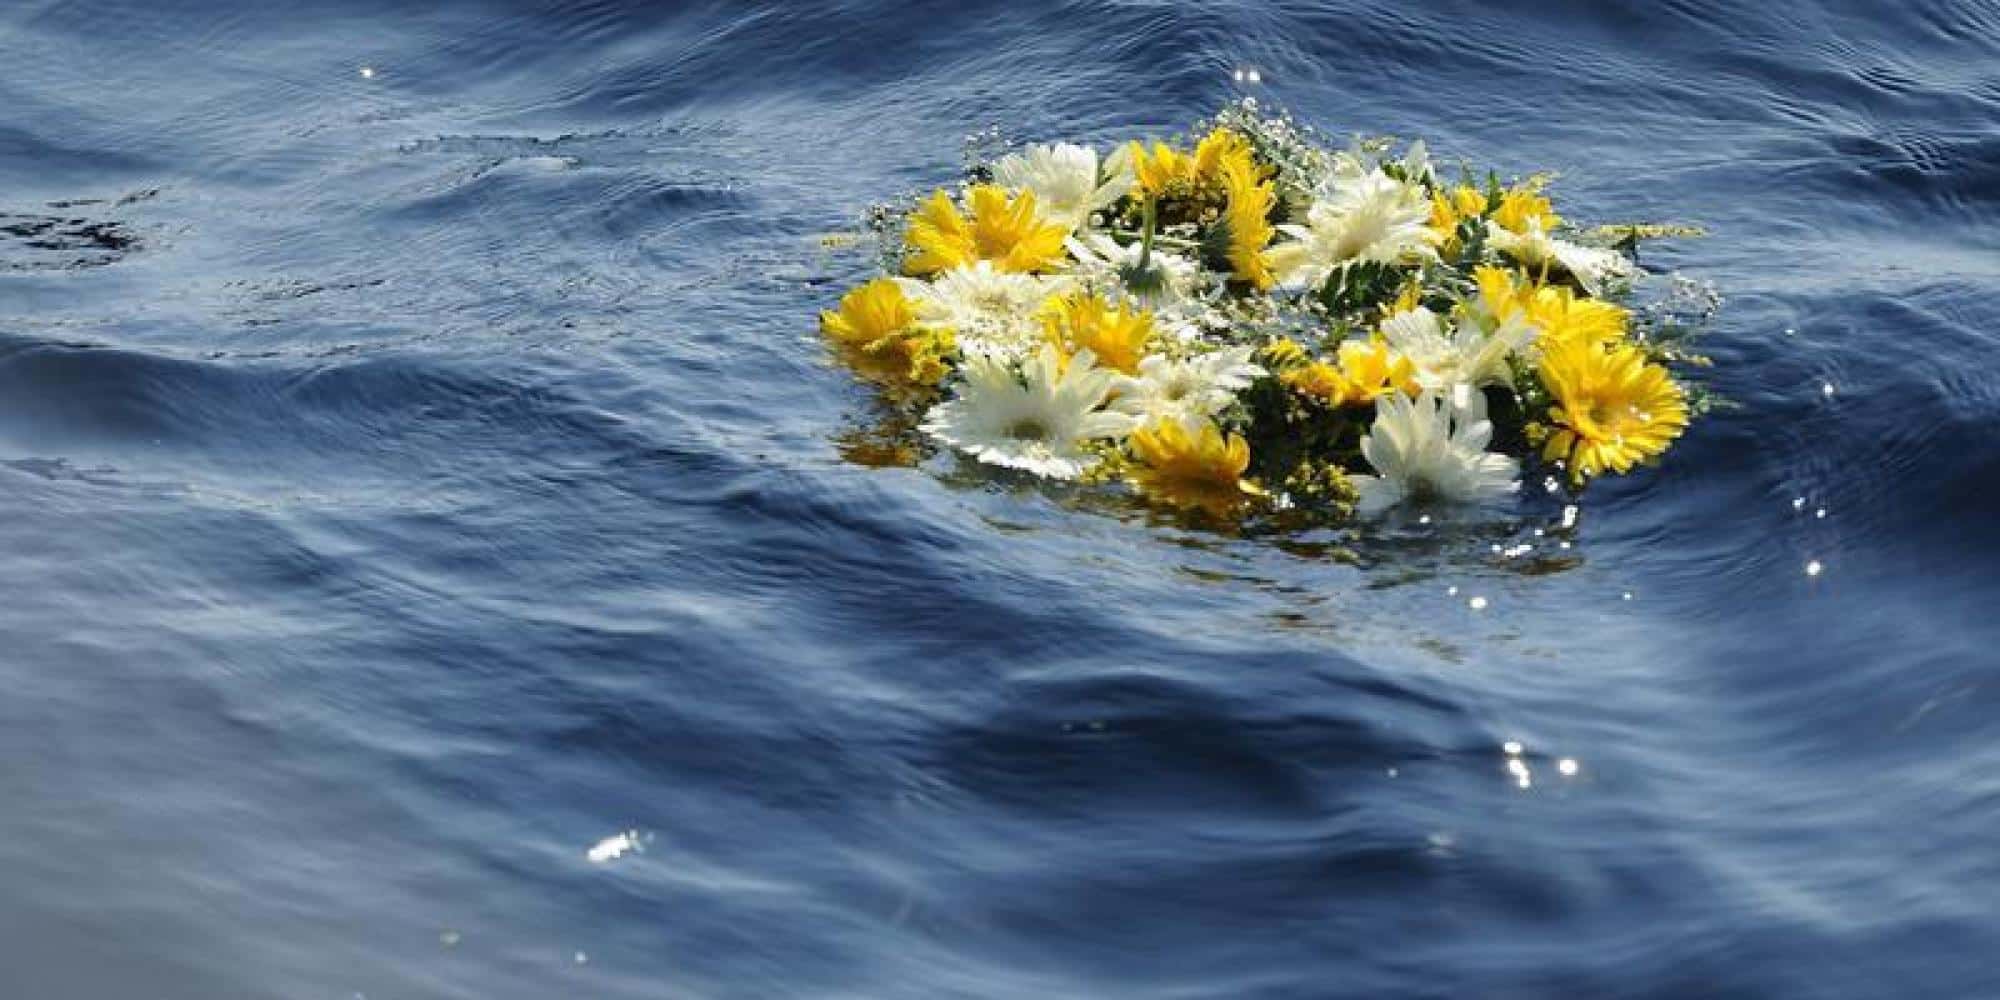 Ritrovato un cadavere tra gli scogli a Lampedusa, potrebbe essere un migrante